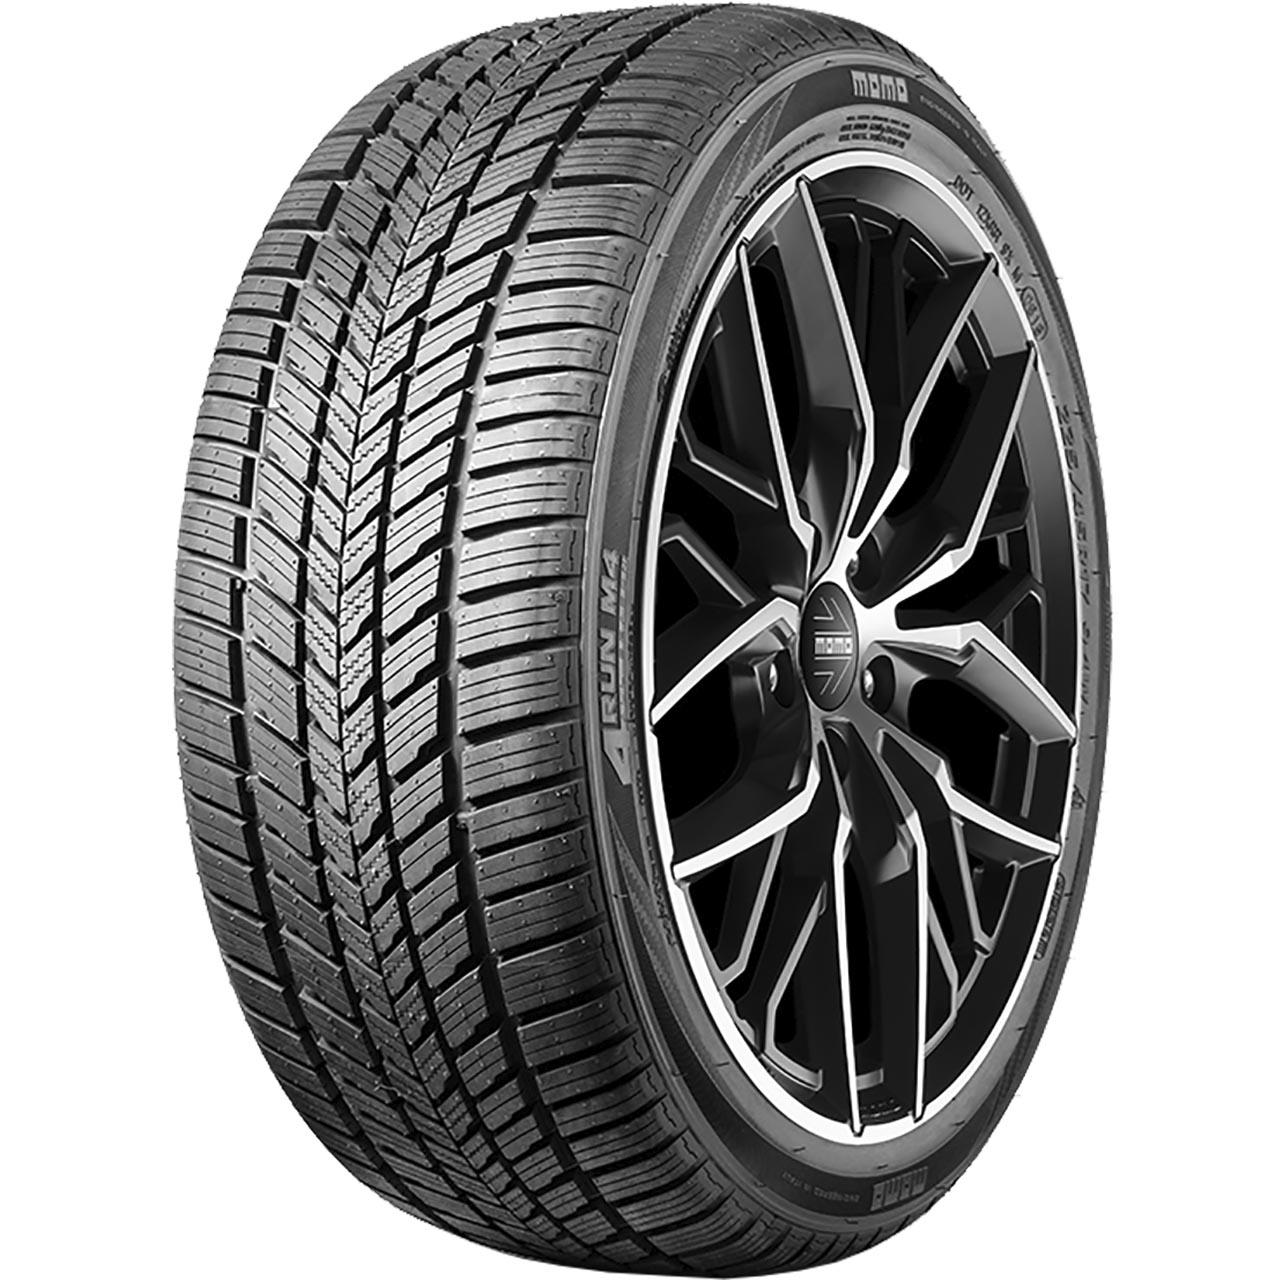 Momo Tire M 4 Four Season 205/60R16 96V XL